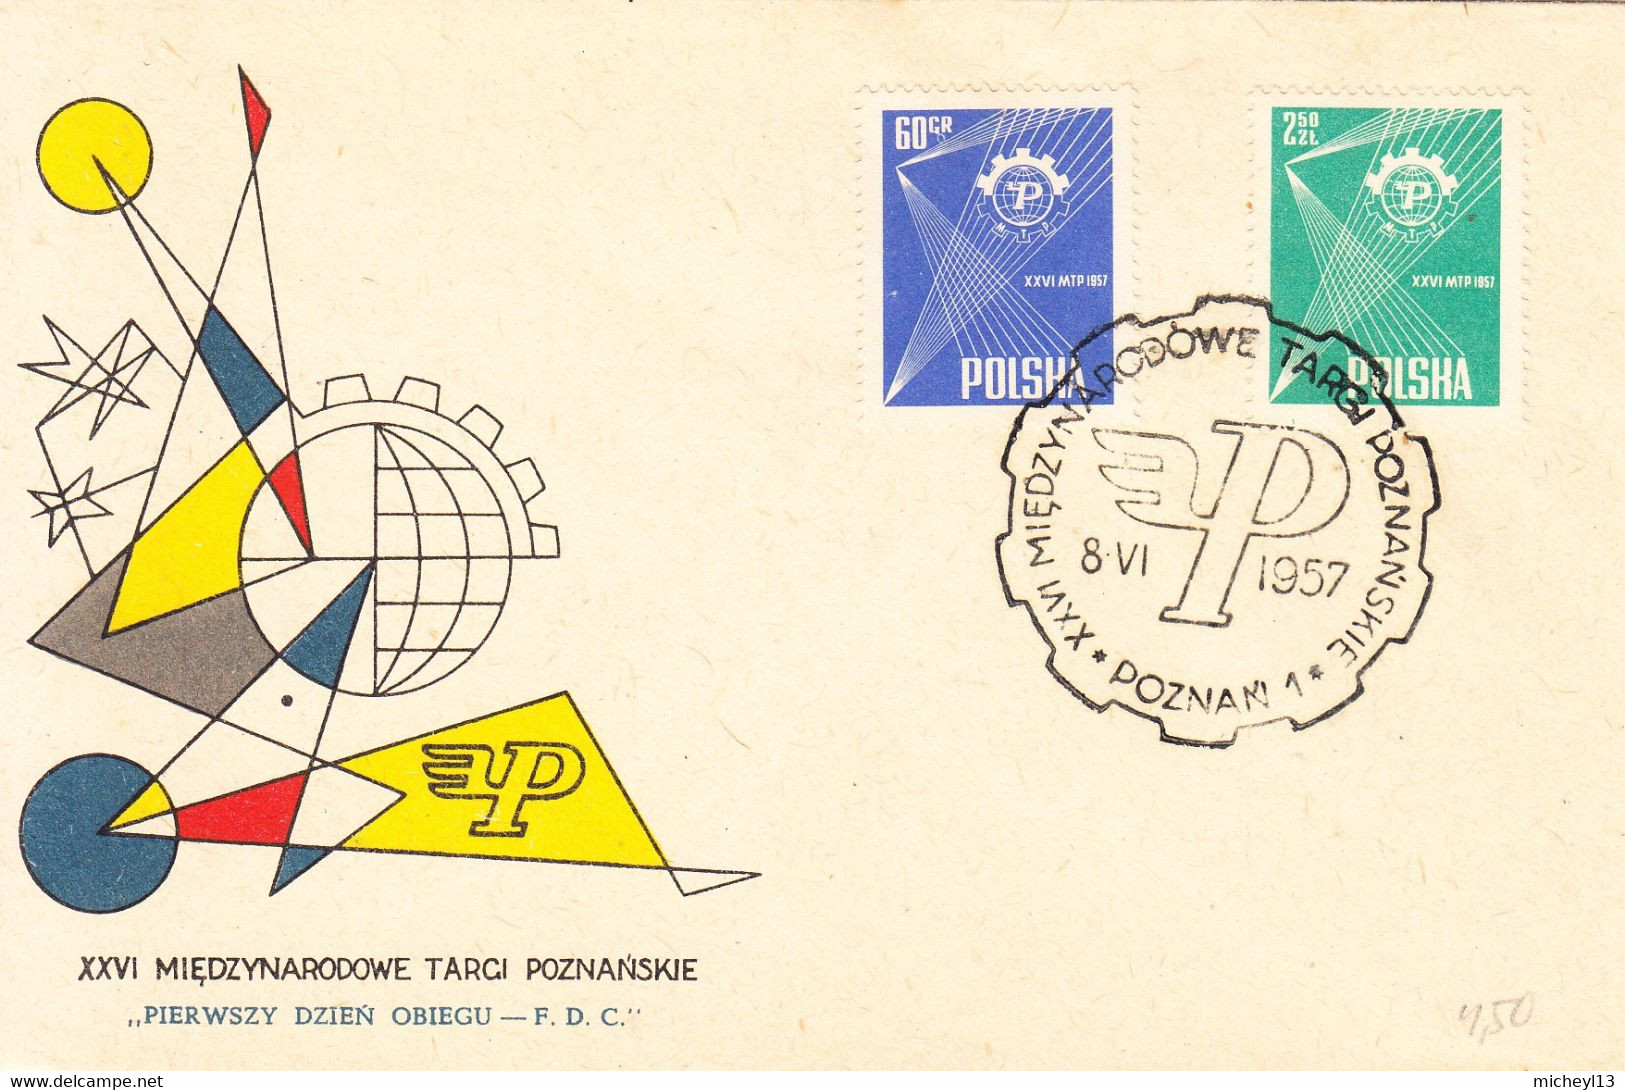 Pologne-7 lettres des années 1957-1962-1964-1967-1968-1969-1995-